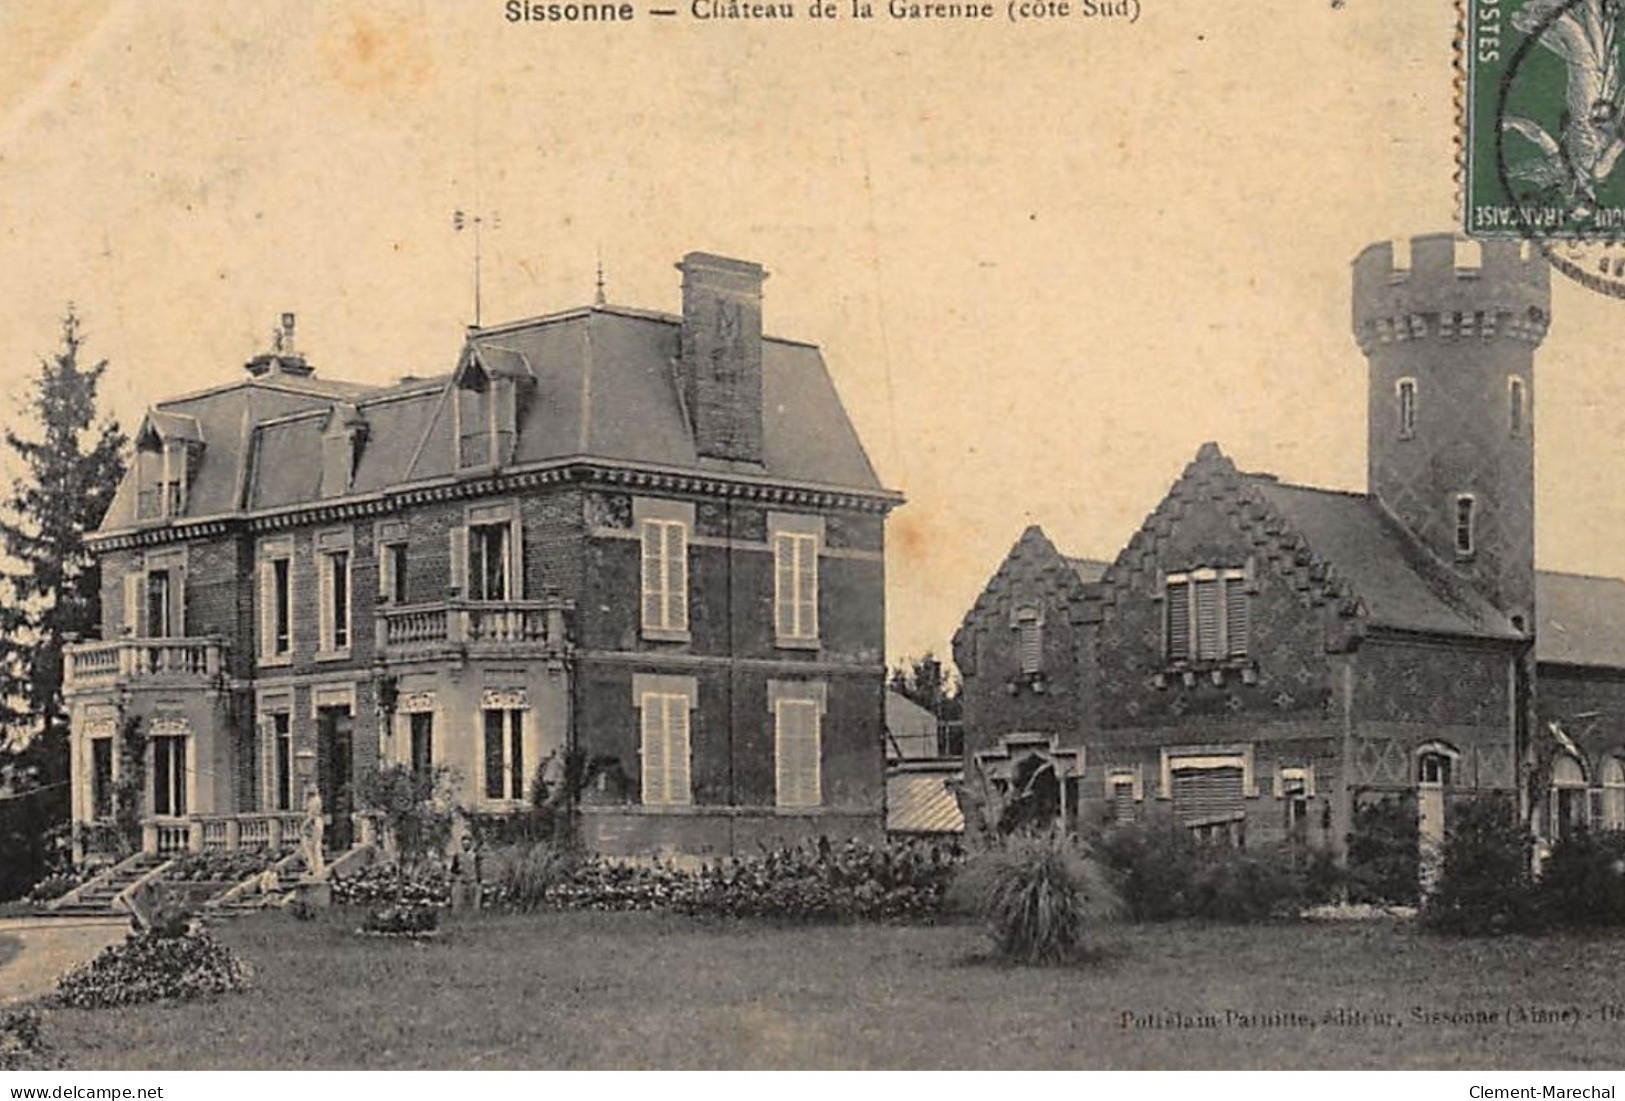 SISSONNE : Chateau De La Garenne (cote Sud) - Tres Bon Etat - Sissonne